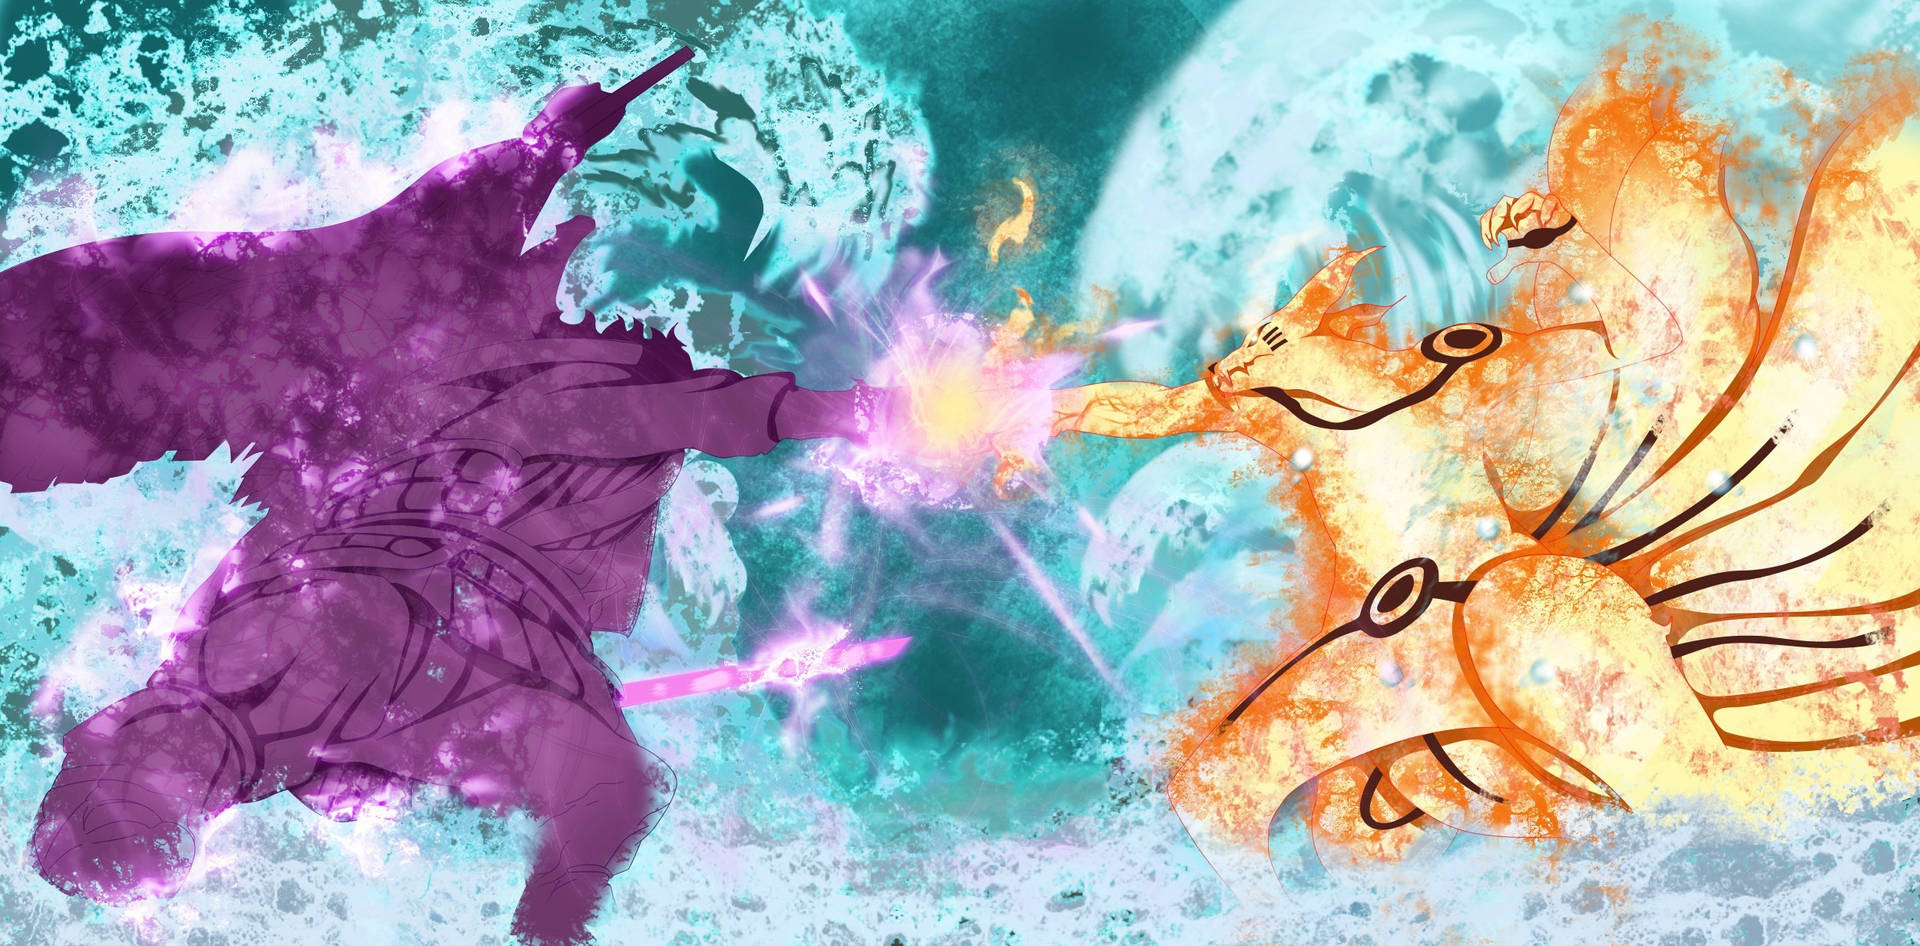 Naruto Vs Sasuke In Final Forms Background